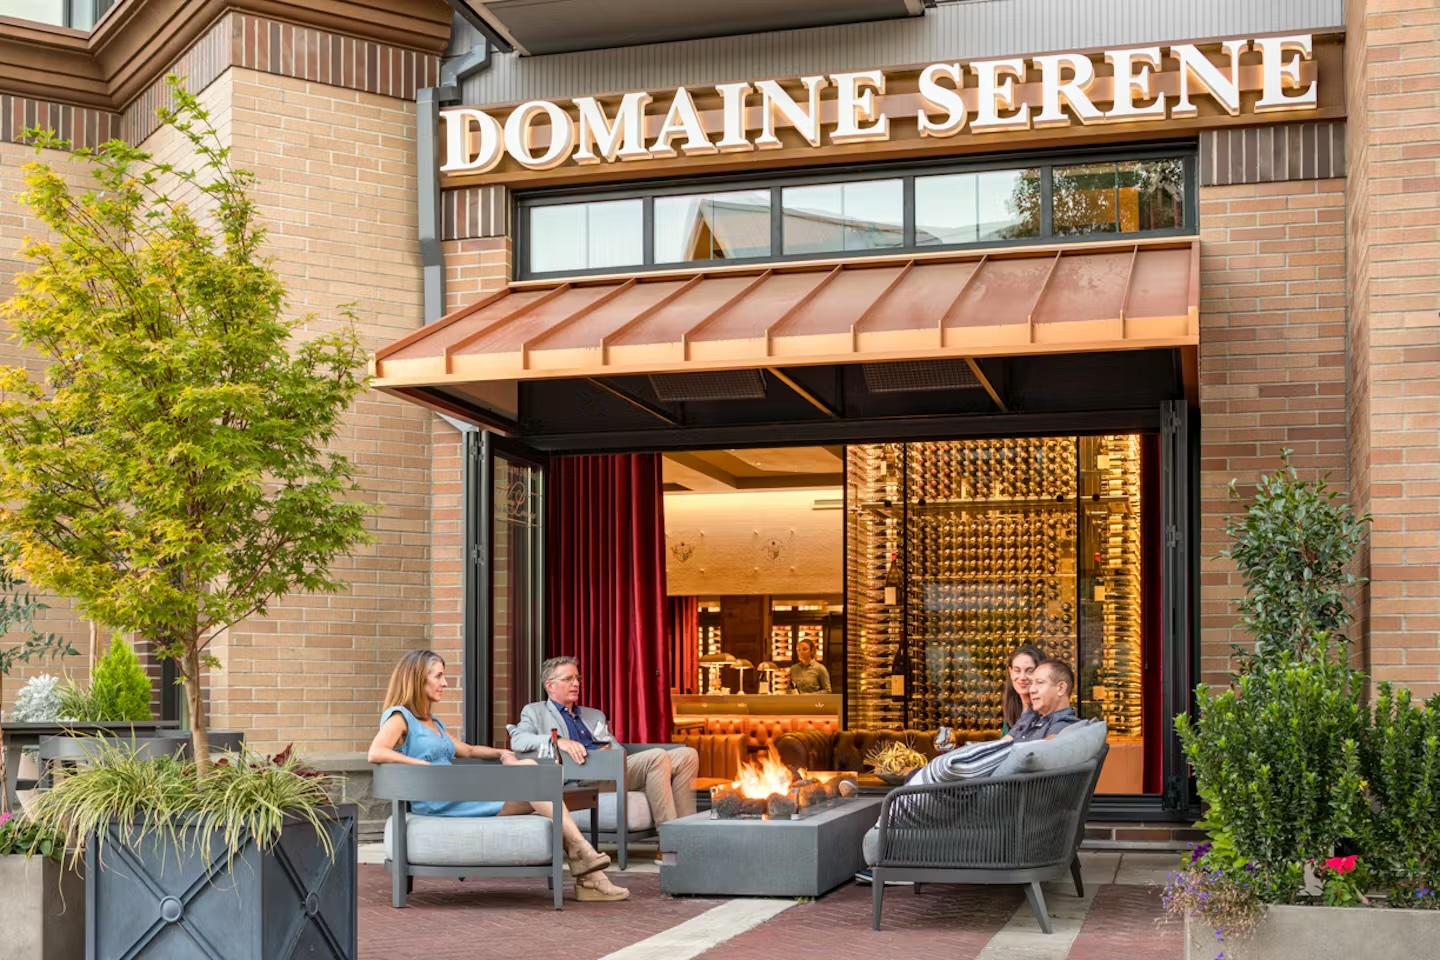 people sitting on patio at Domaine Serene Wine Lounge Lake Oswego